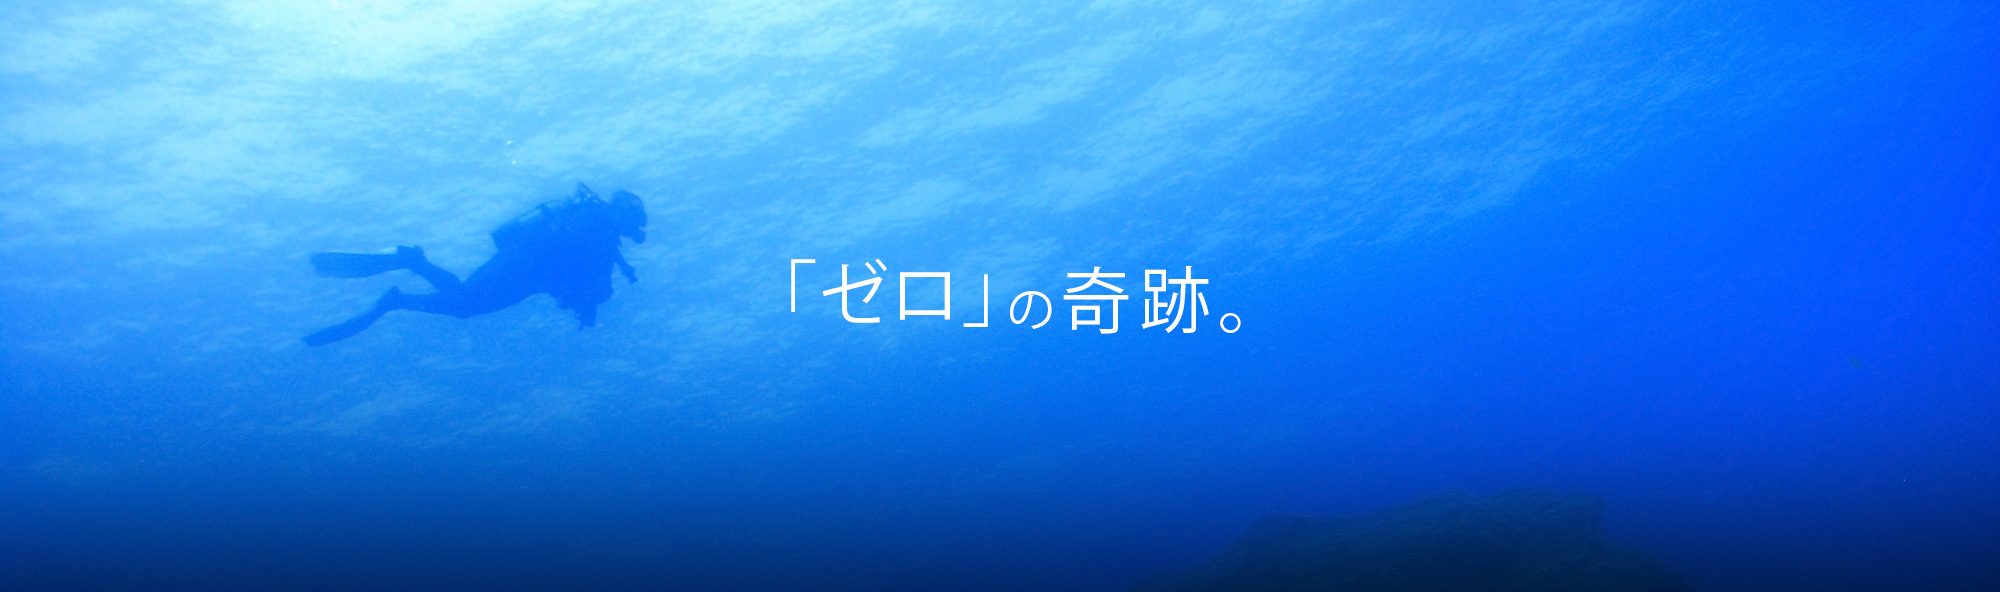 竹井勉公式サイト -「ゼロ」の奇跡。